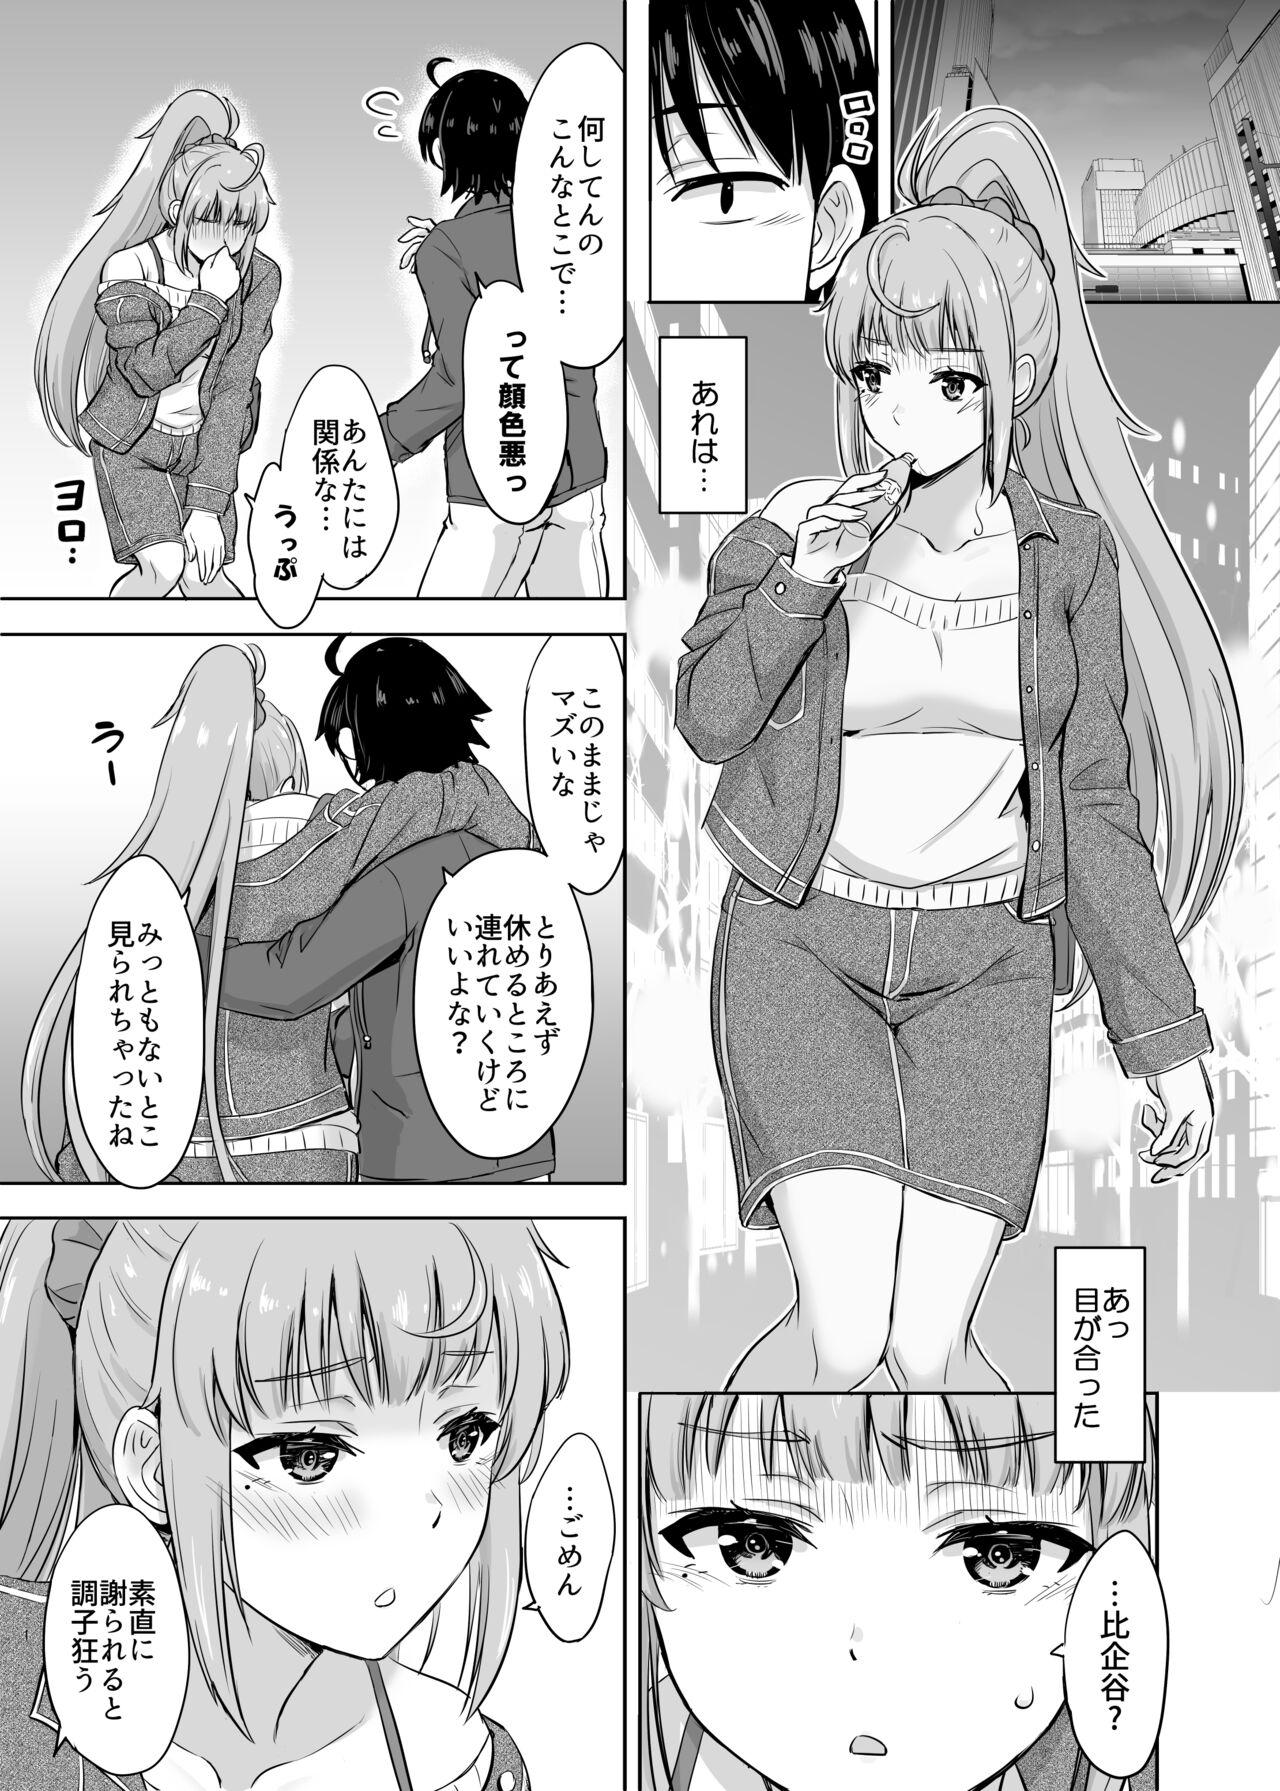 Friend Ashi-san Saki Saki Manga - Yahari ore no seishun love come wa machigatteiru Exotic - Picture 1